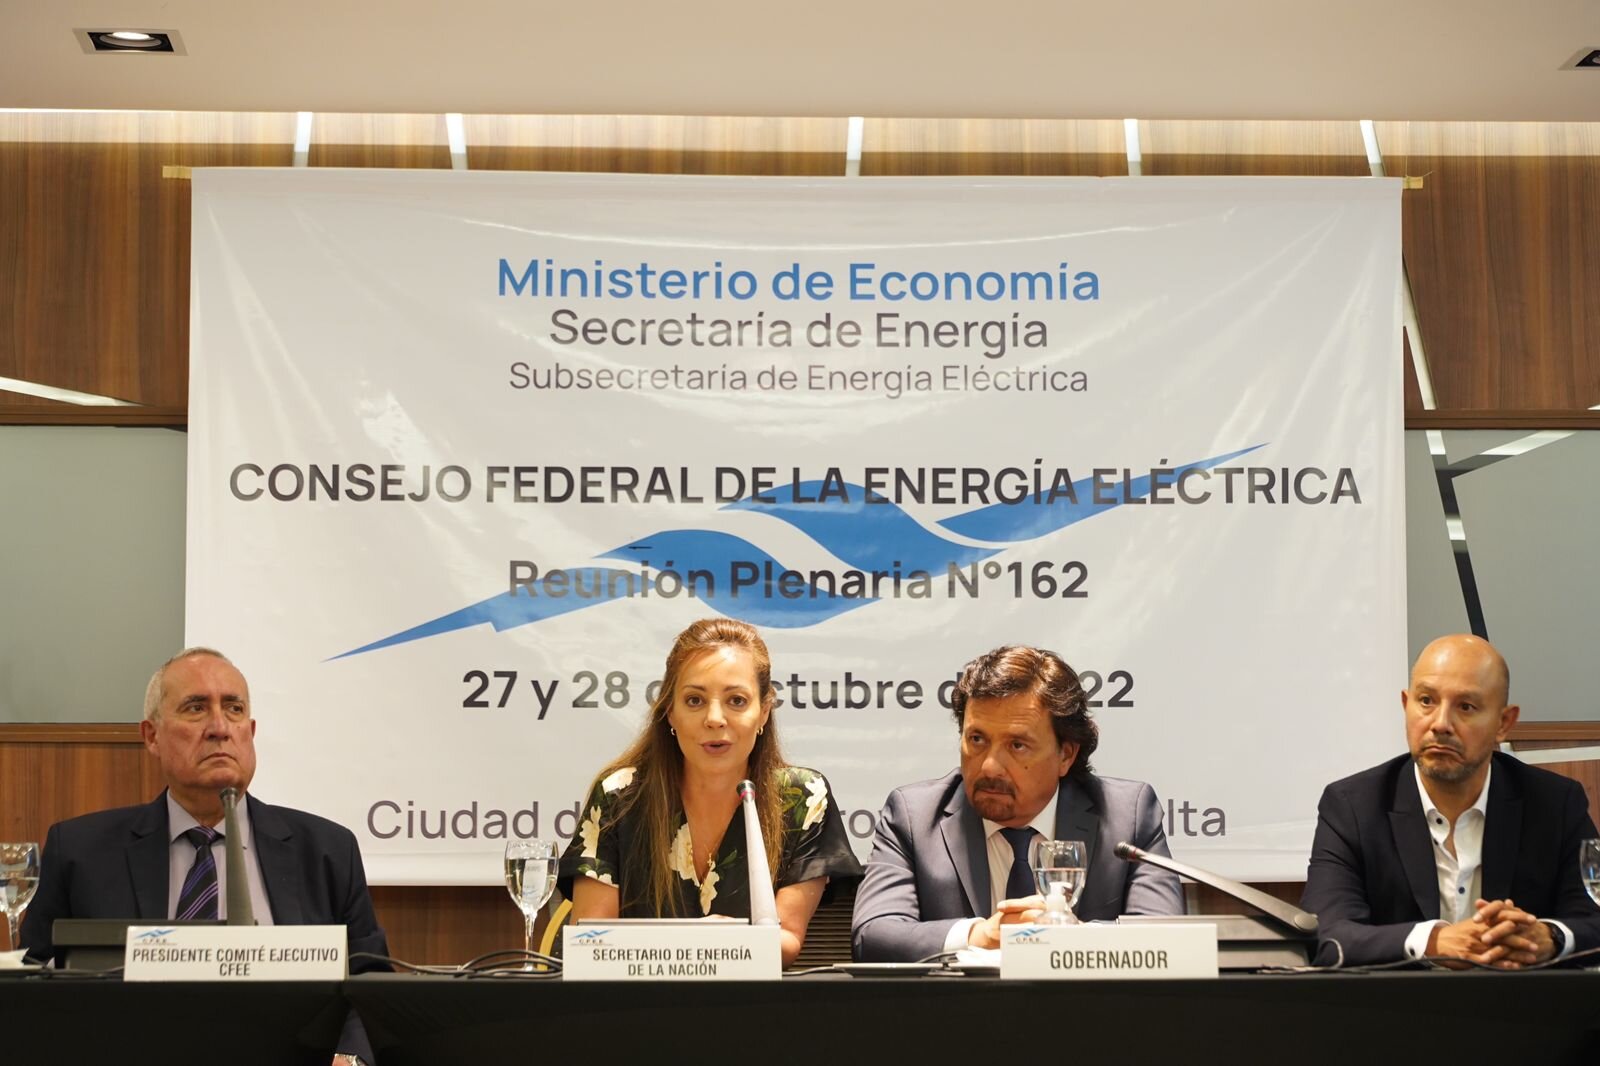 La secretaria de Energía resaltó el federalismo del Consejo. Foto: gentileza. 